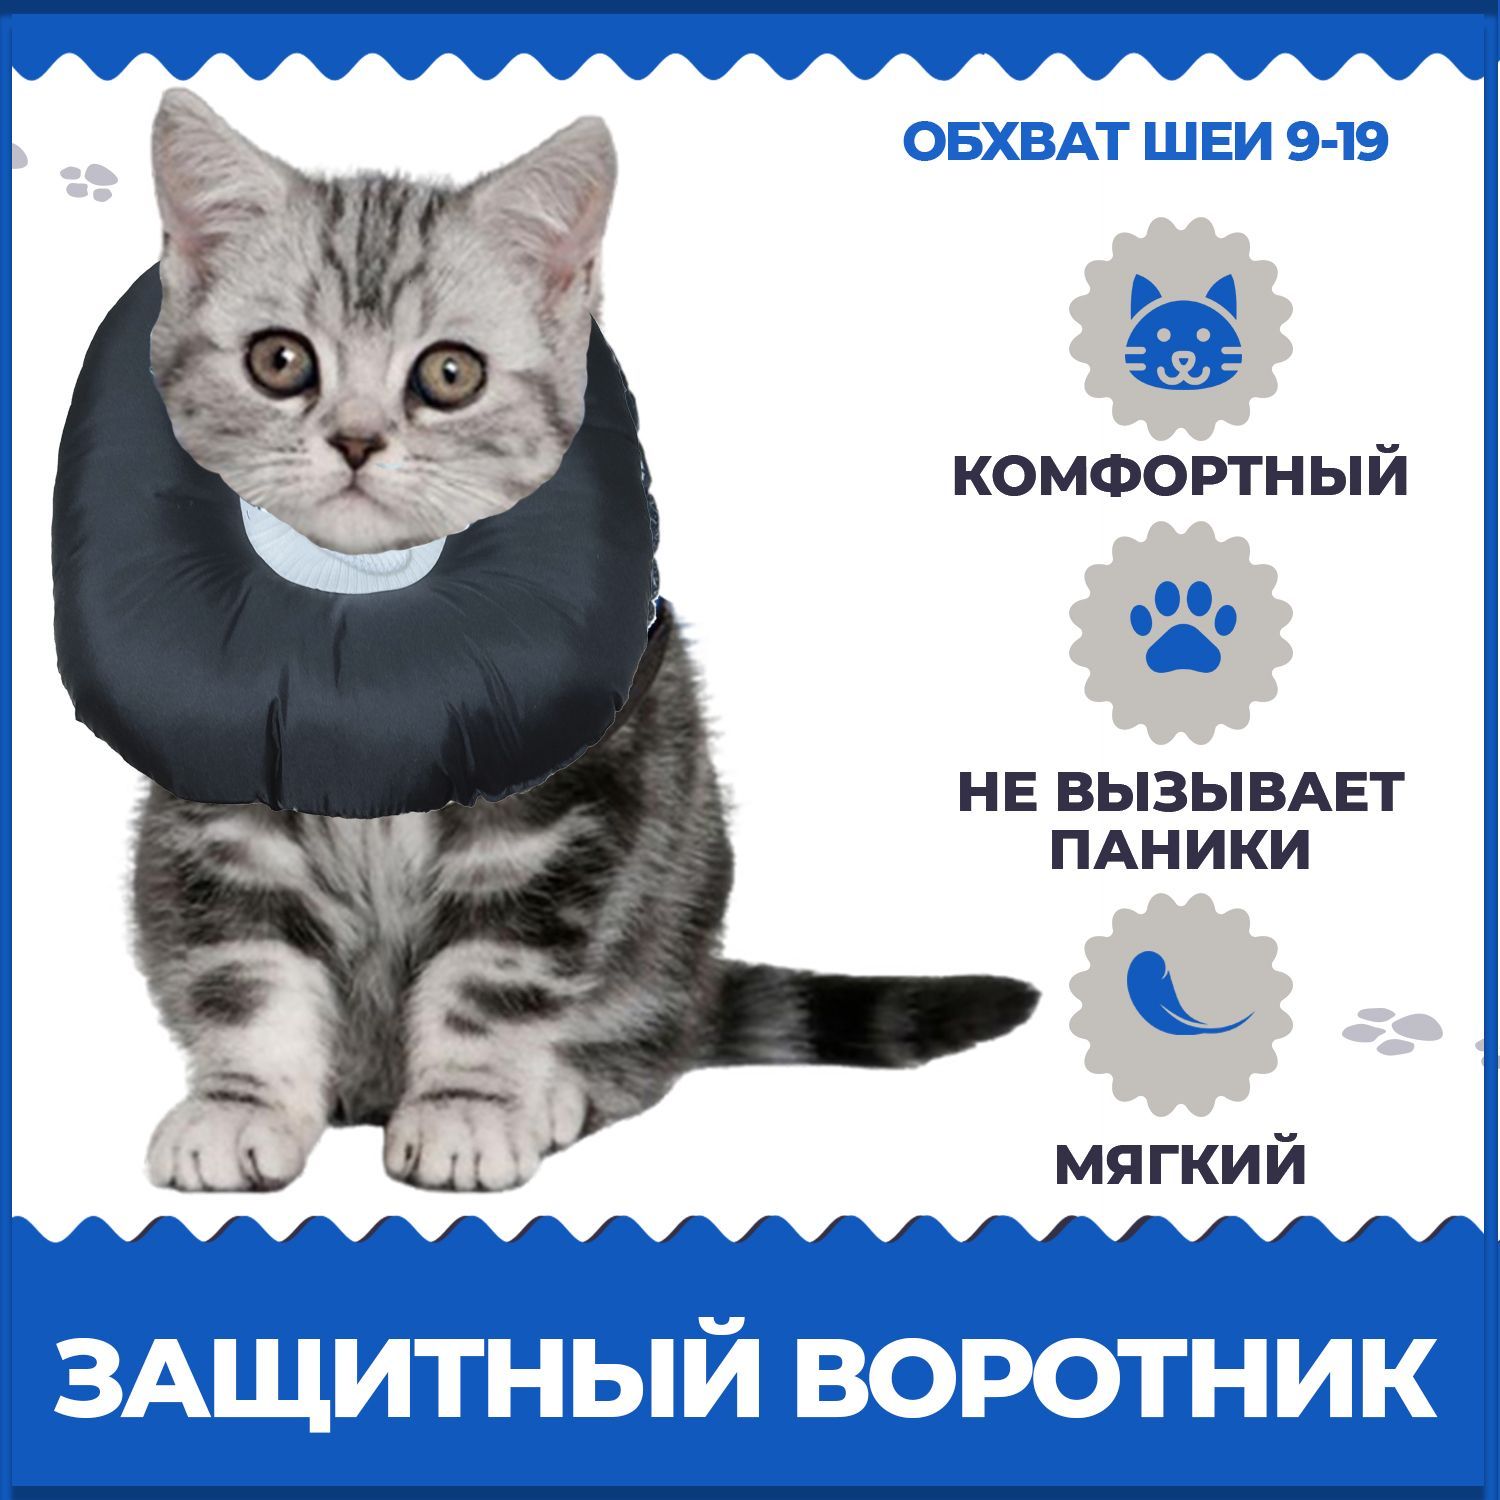 Защитный мягкий ветеринарный воротник для кошек и собак размер S,M от 2,5 до 7кг